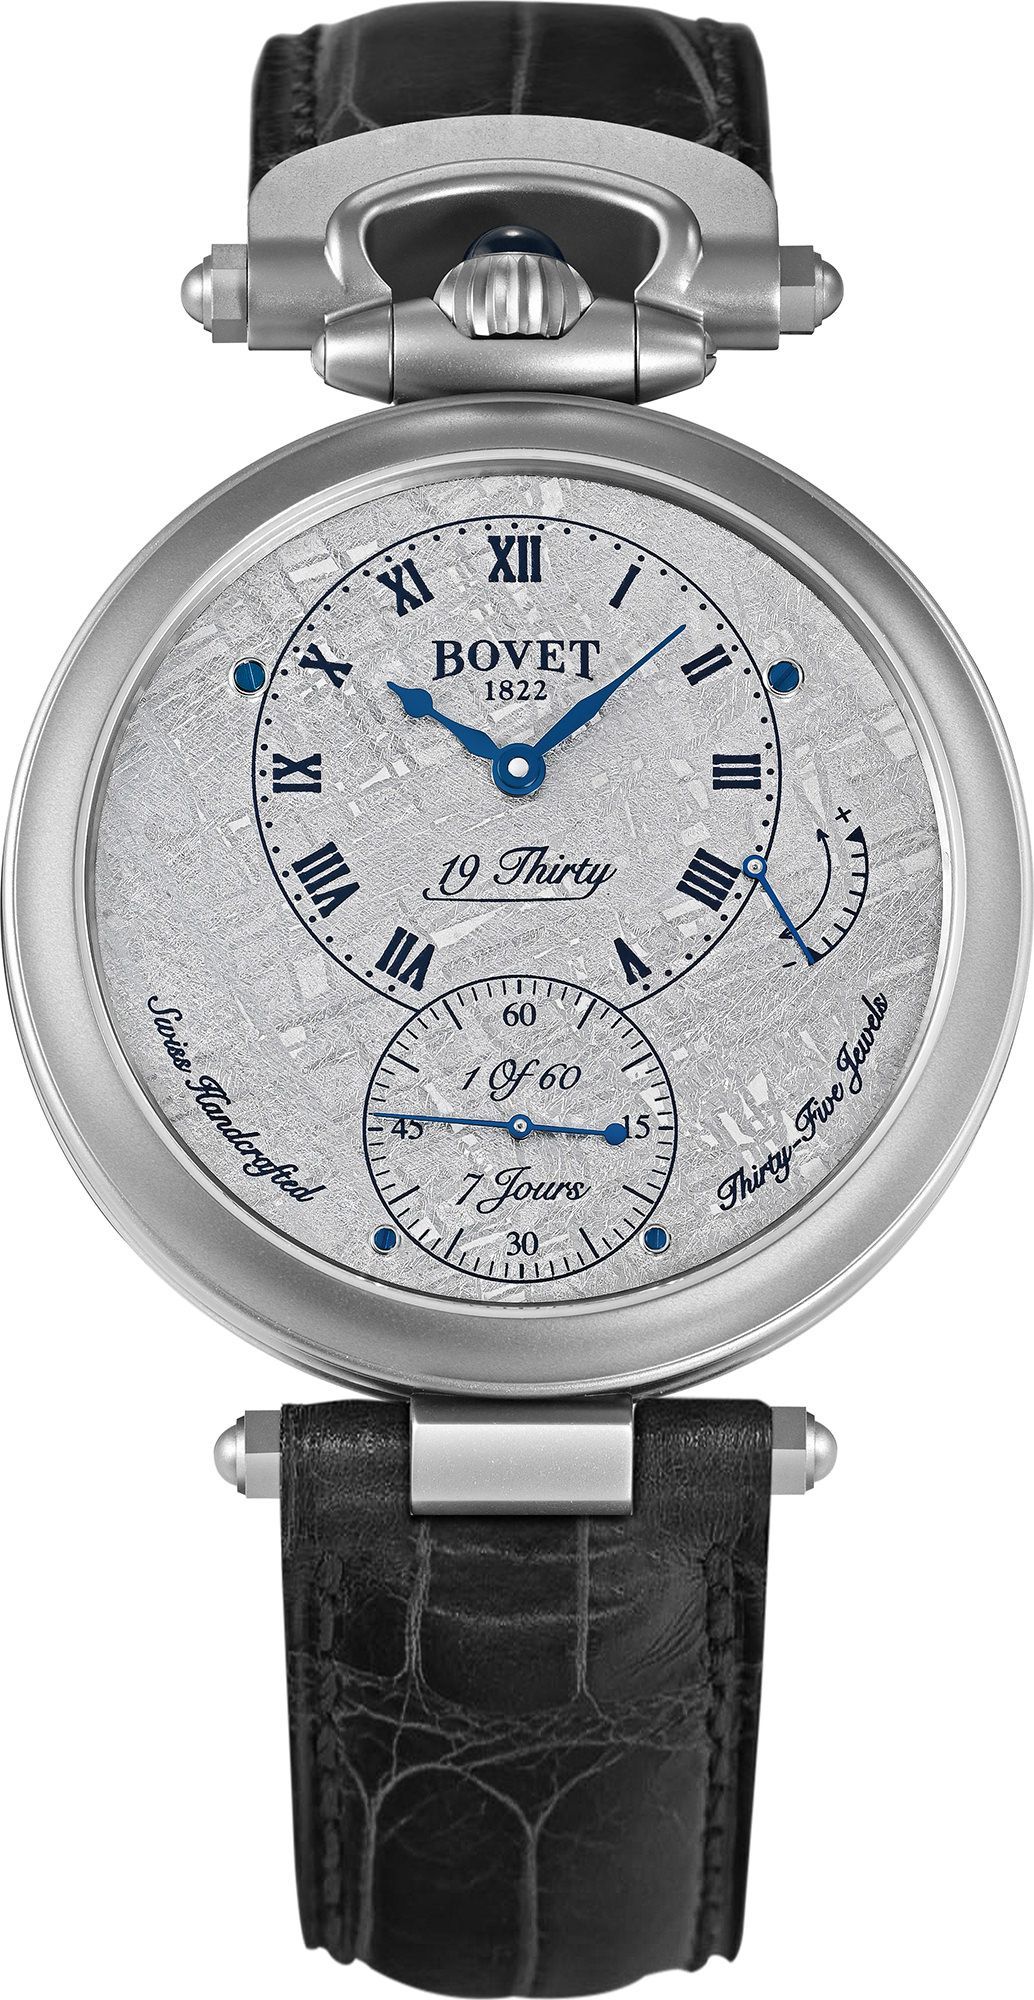 Bovet Fleurier 19Thirty Meteorite Grey Dial 42 mm Manual Winding Watch For Men - 1